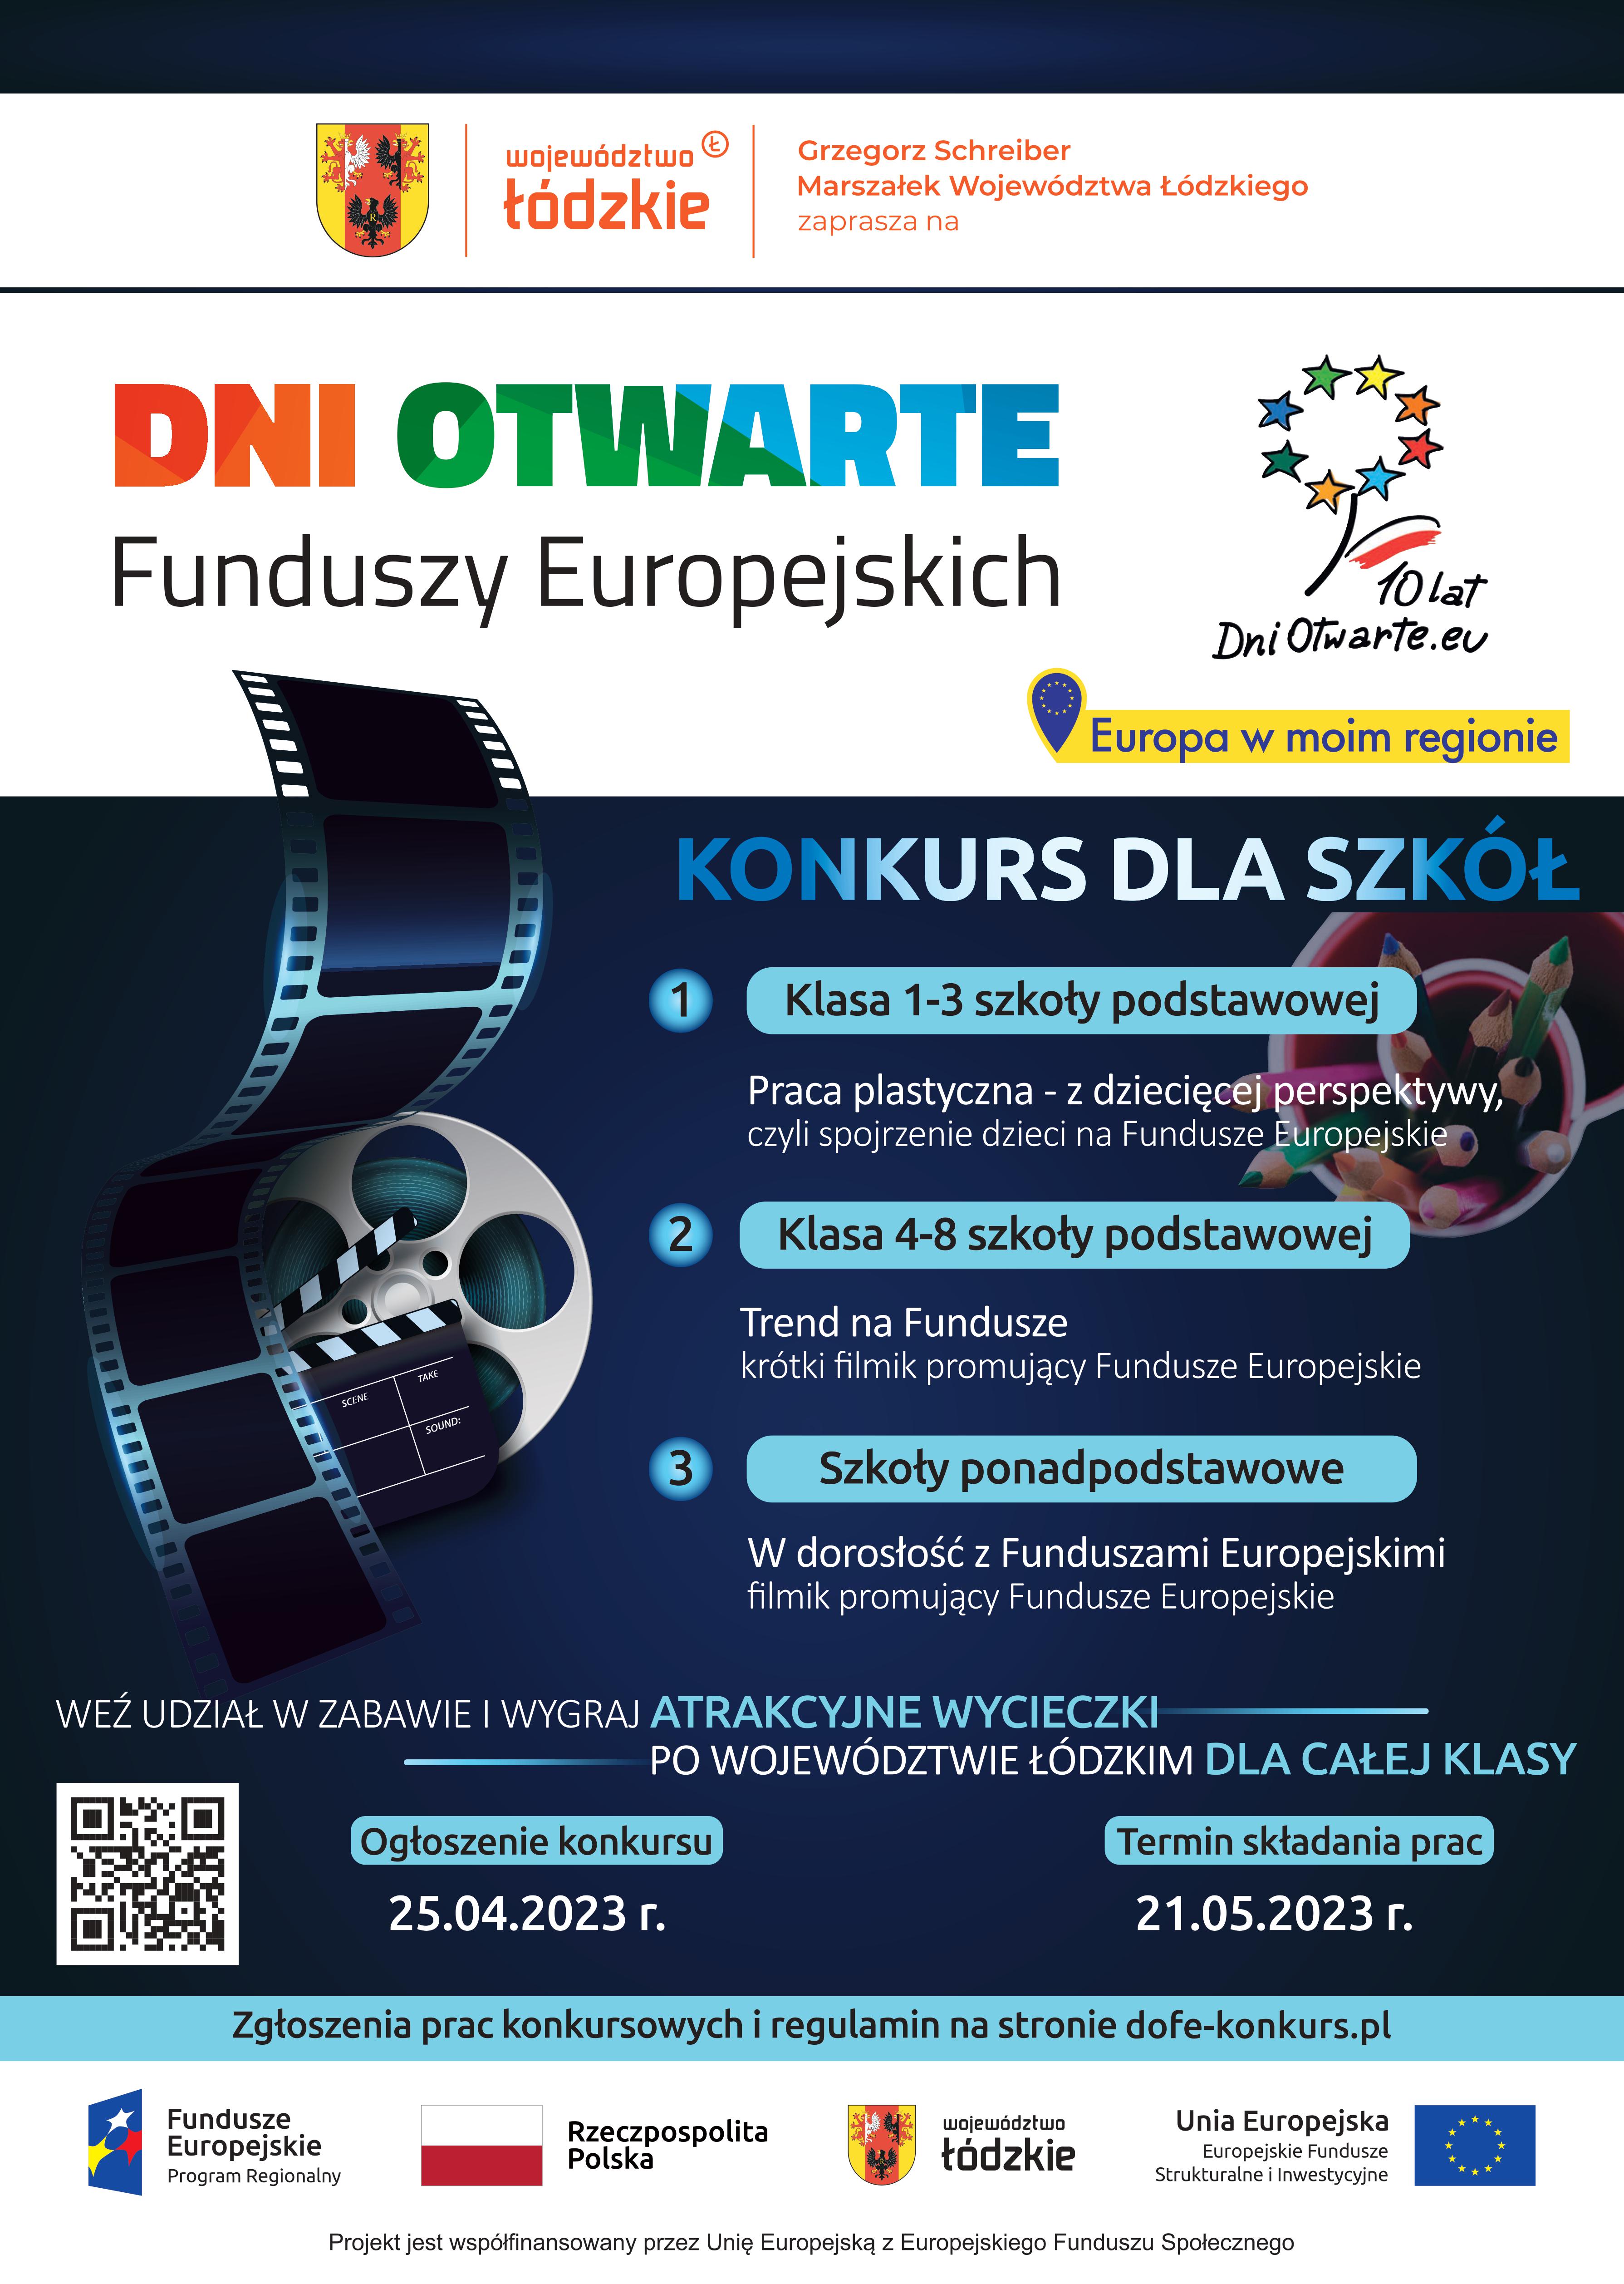 Plakat promujący konkurs w ramach Dni Otwarte Funduszy Europejskich